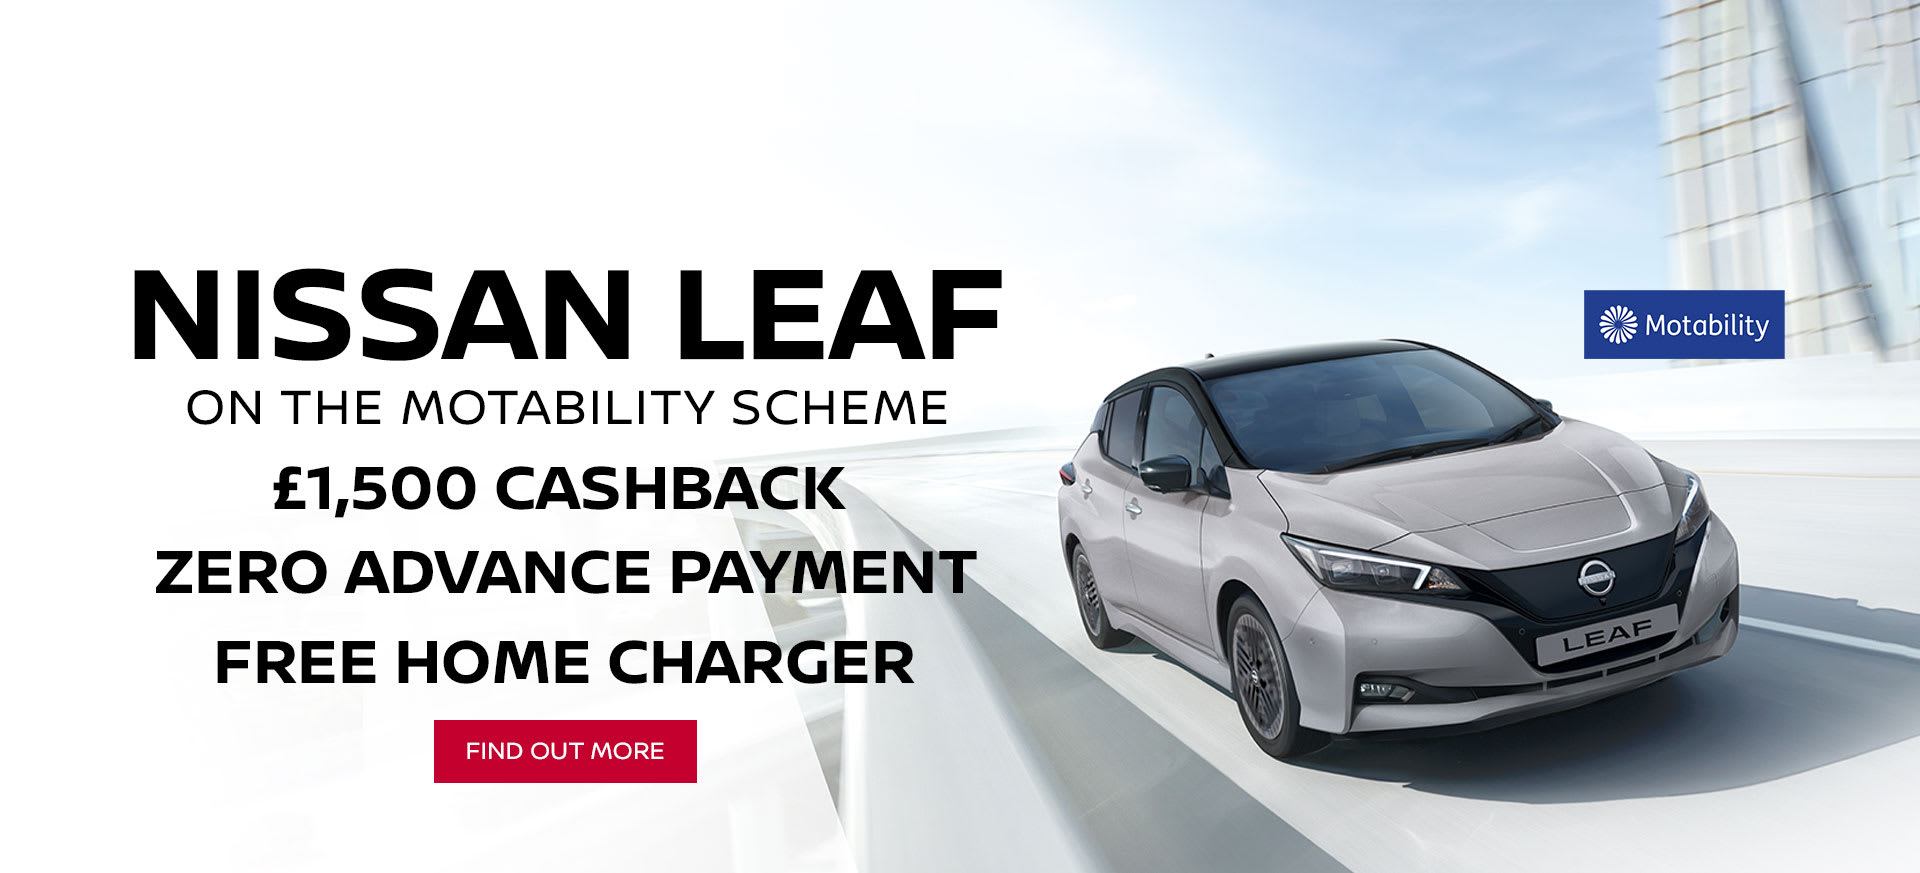 Nissan LEAF Motability Offer